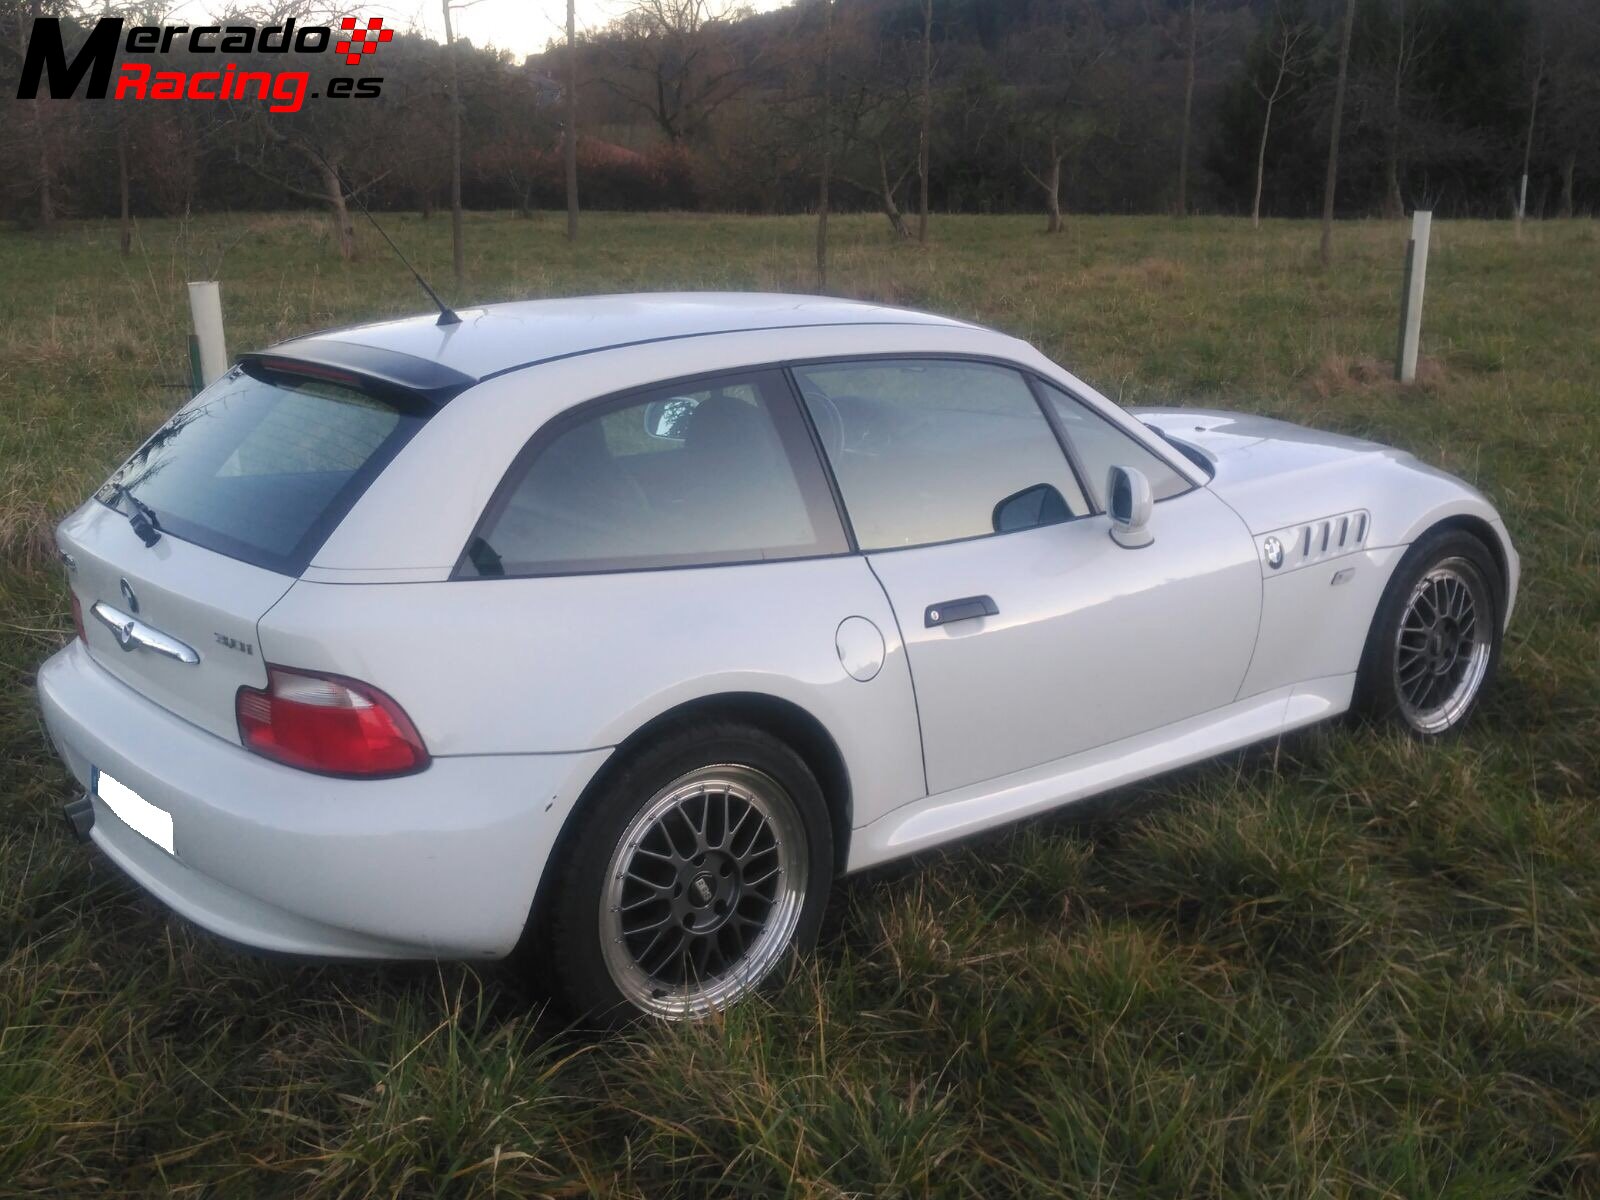 Vendo bmw z3 3.0i coupé junio/2001, 92114kms, blanco